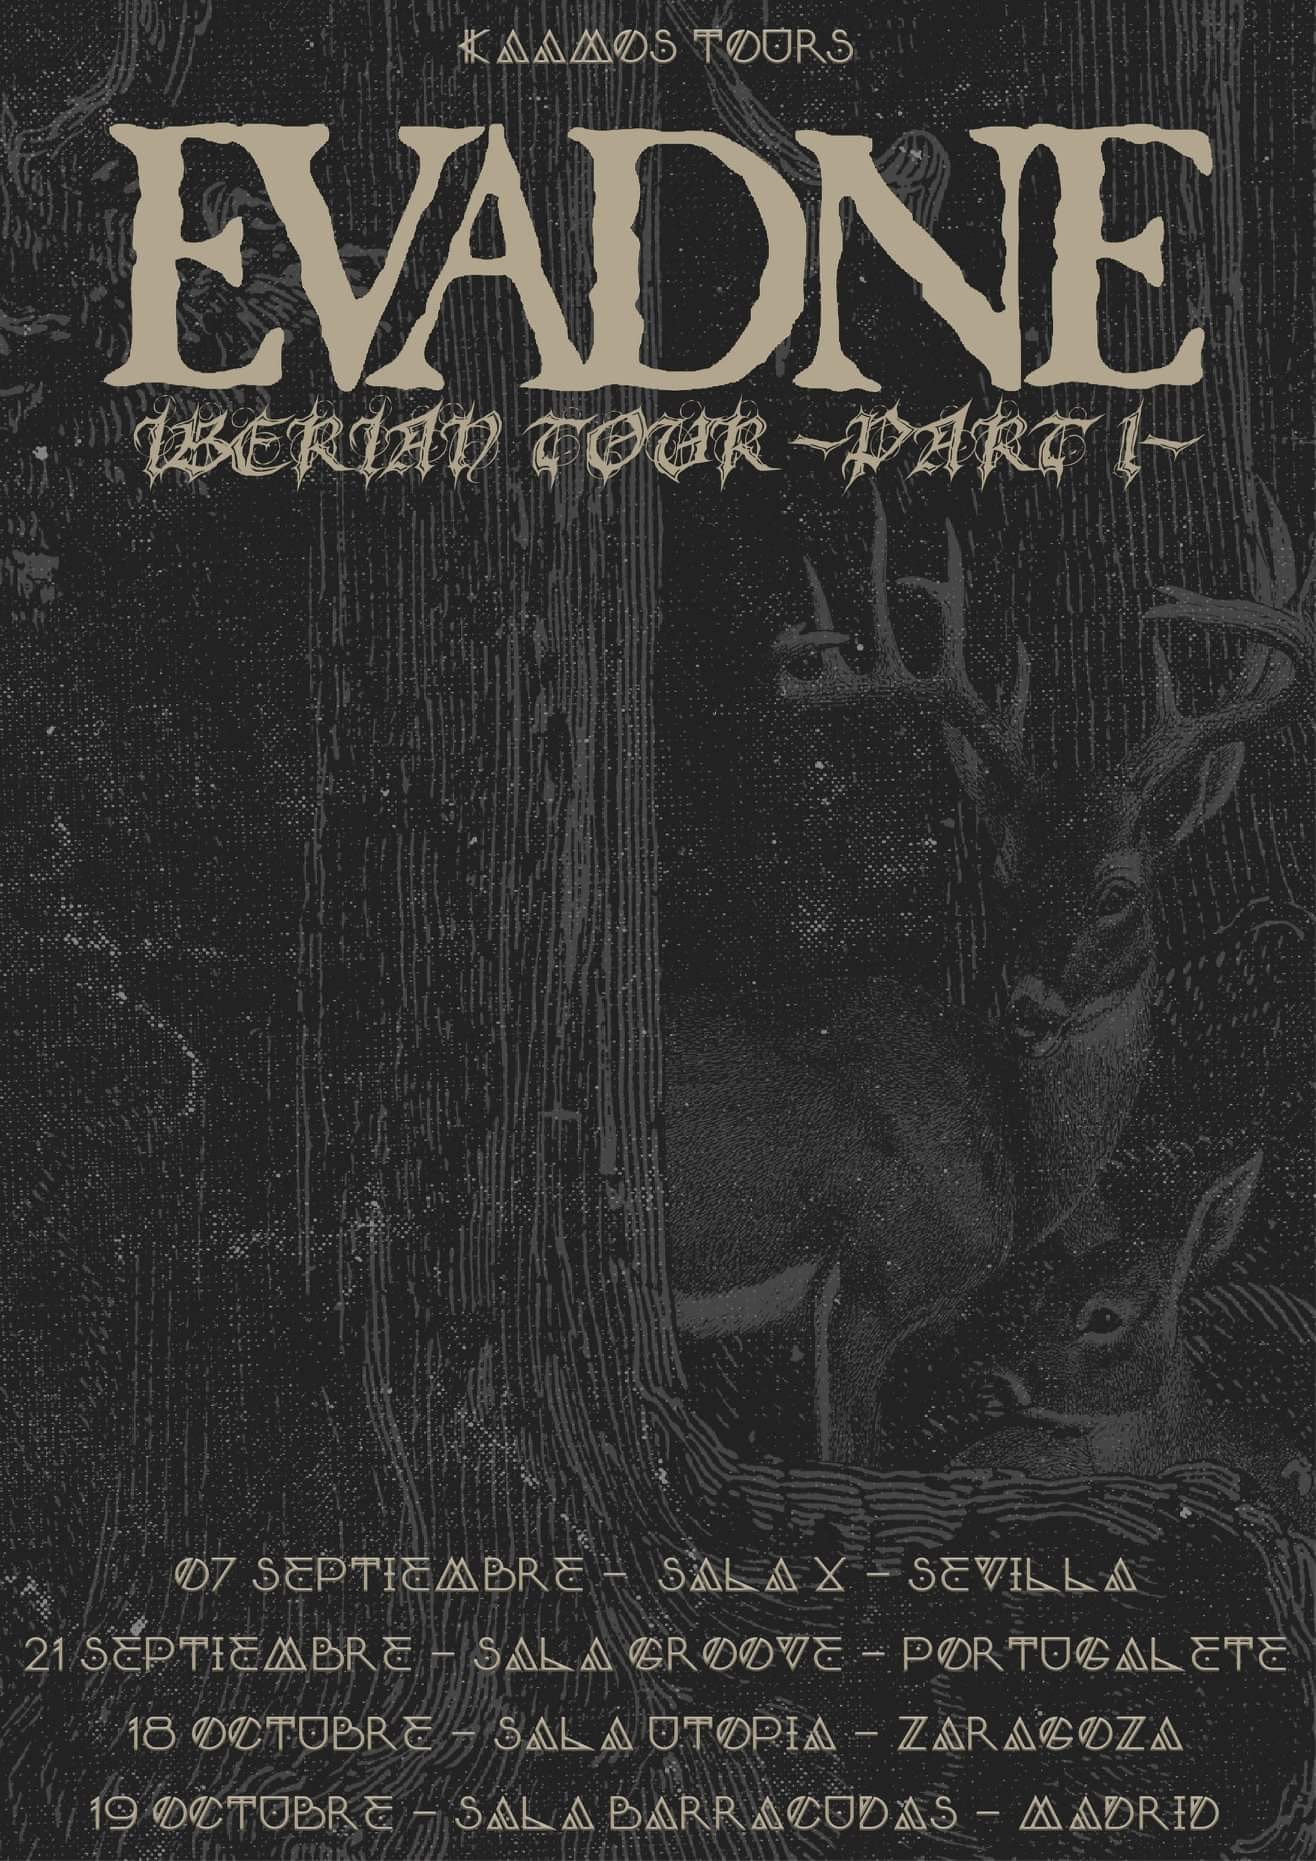 EVADNE anuncia las fechas de su gira por España